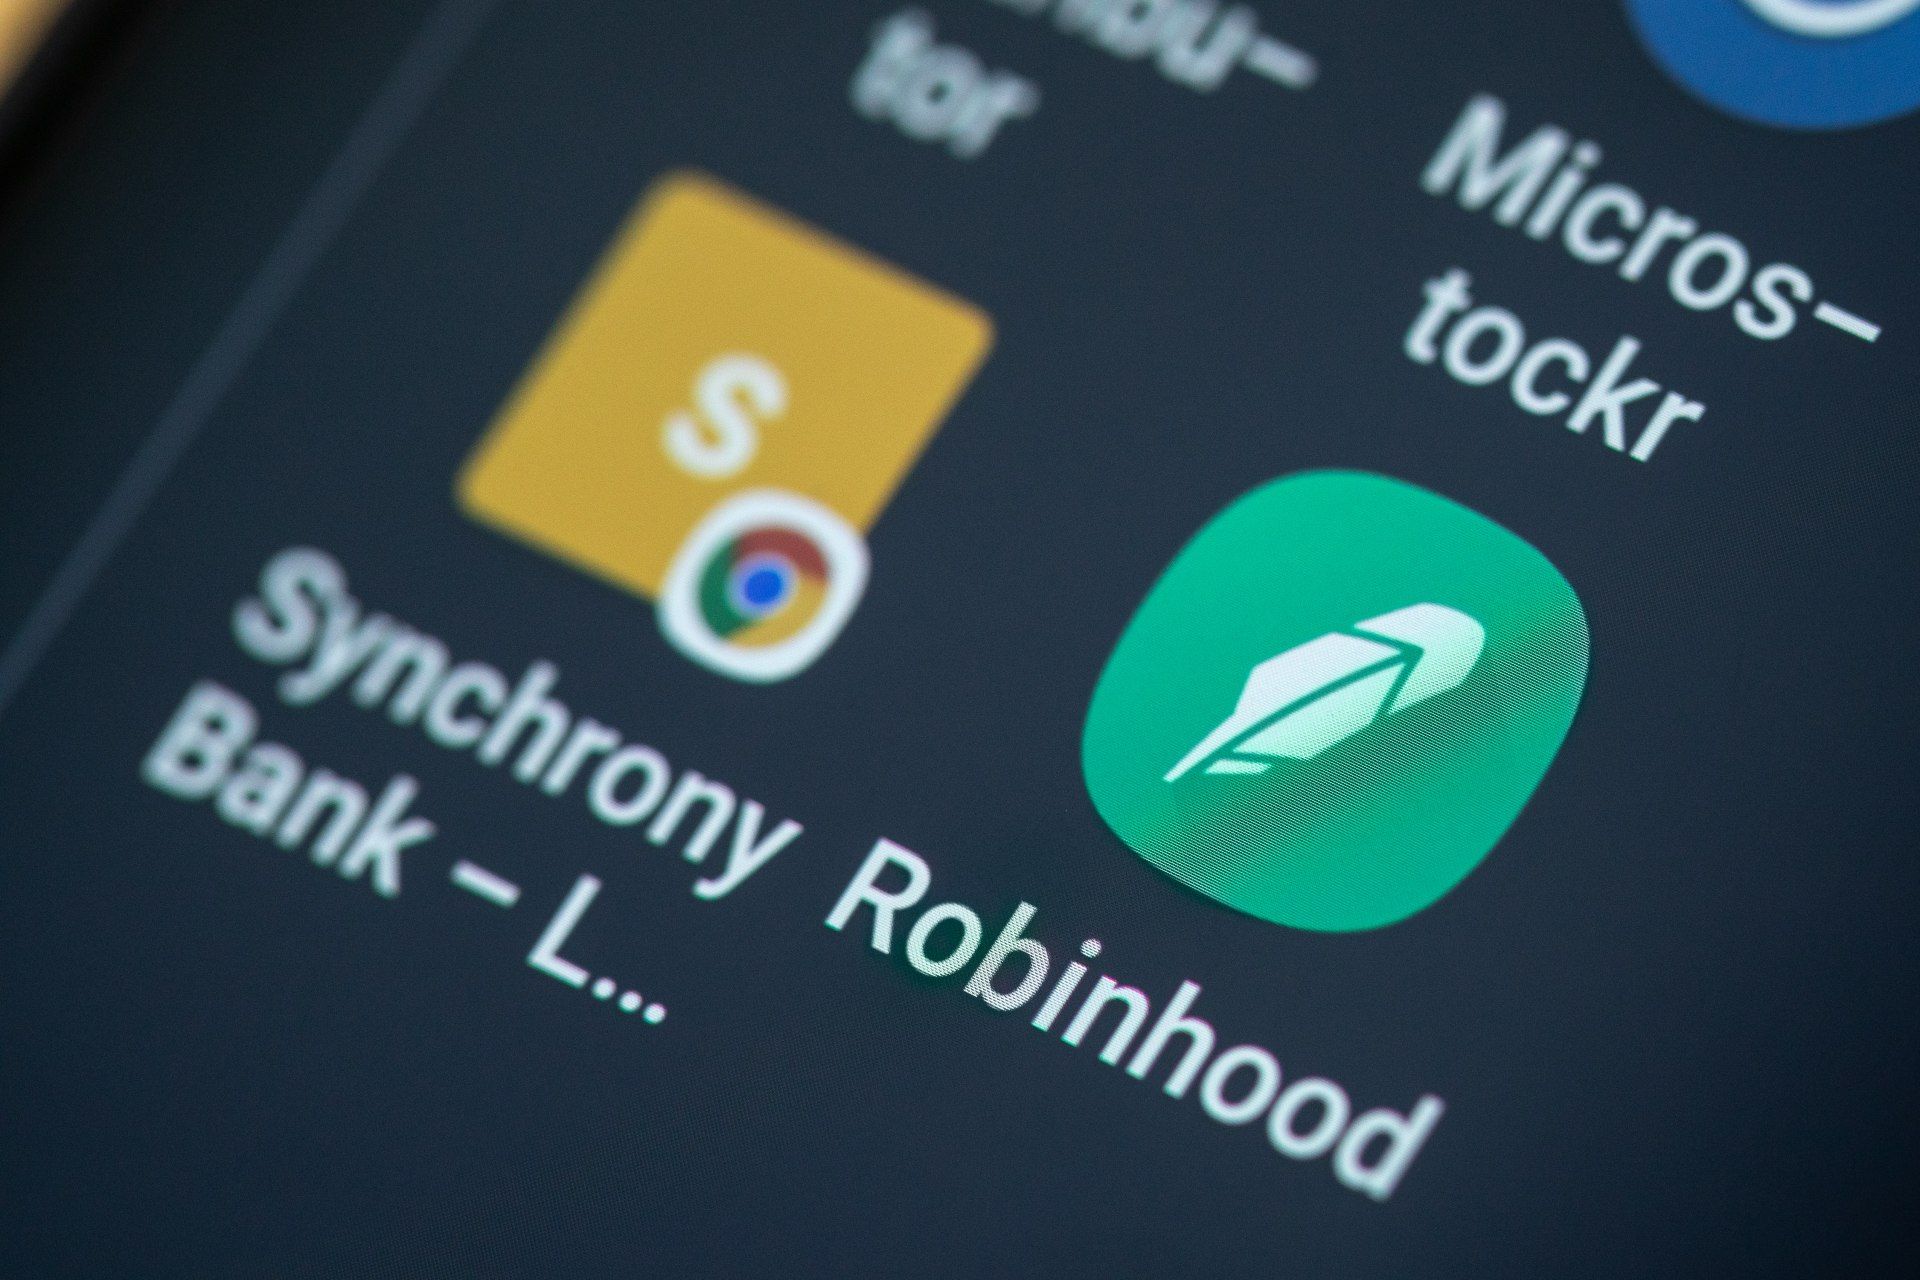 The Robinhood app is seen on a smartphone screen - robinhood app outage